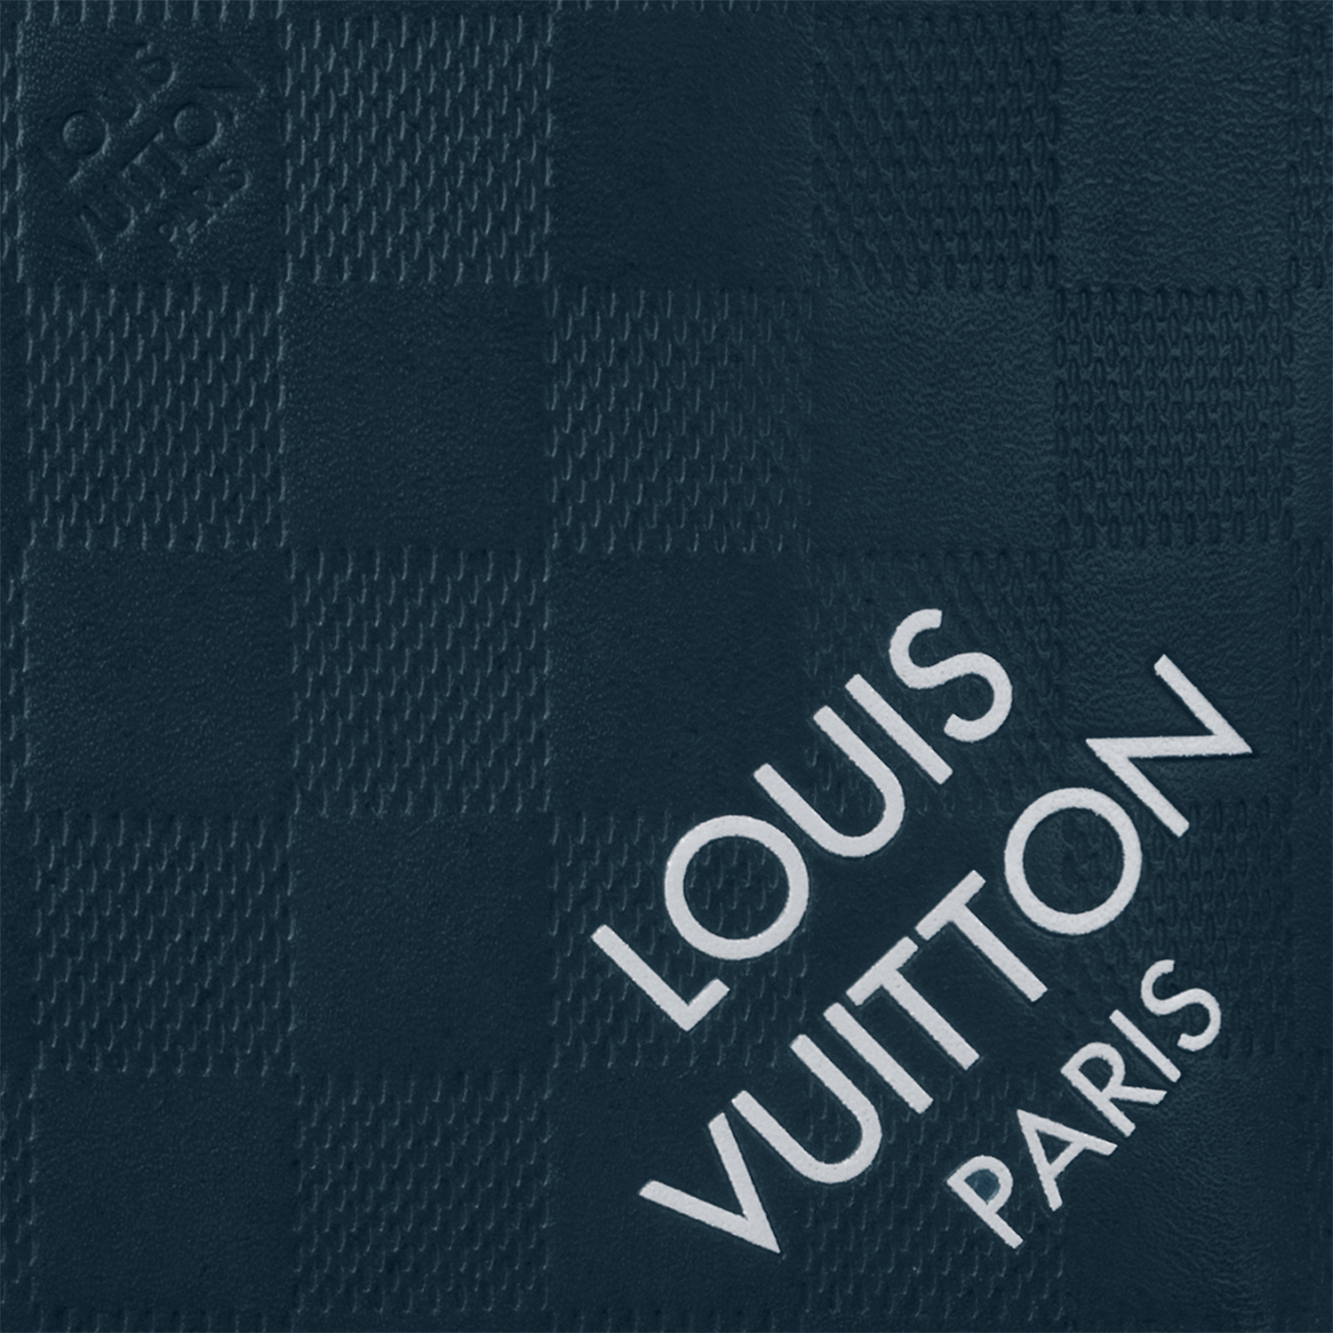 Louis Vuitton Avenue Sling Bag - Vitkac shop online